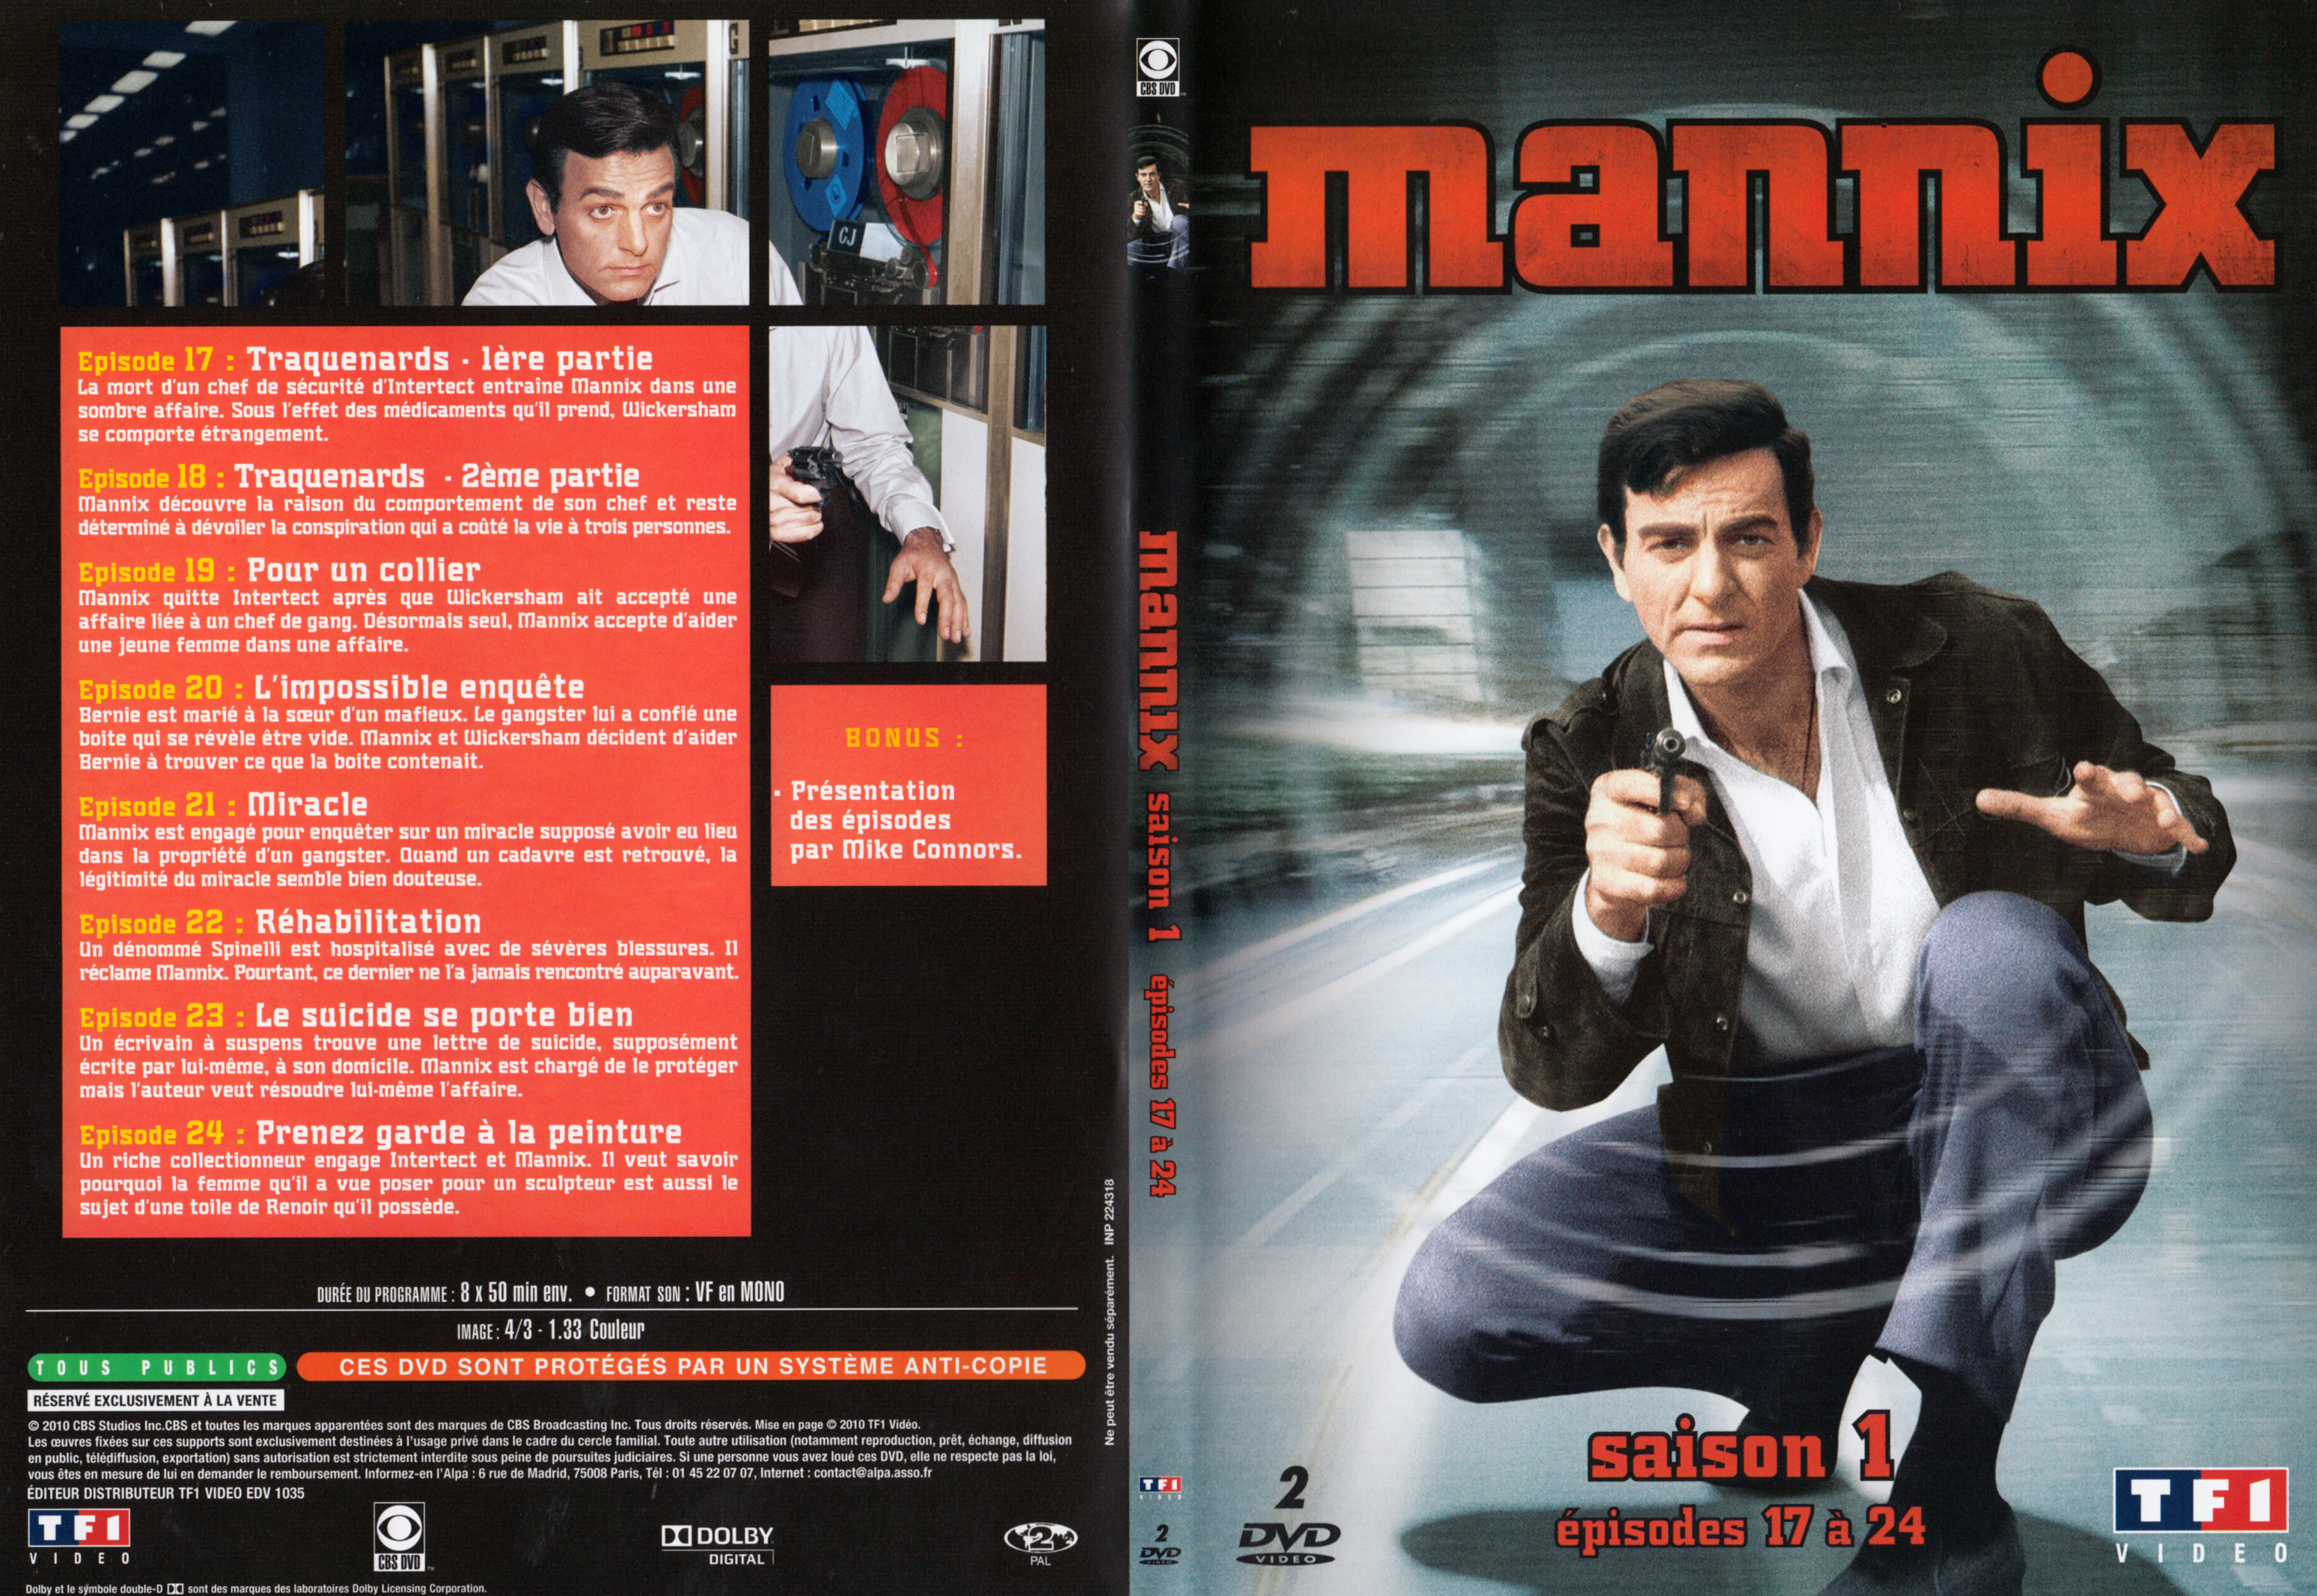 Jaquette DVD Mannix Saison 1 Ep 17-24